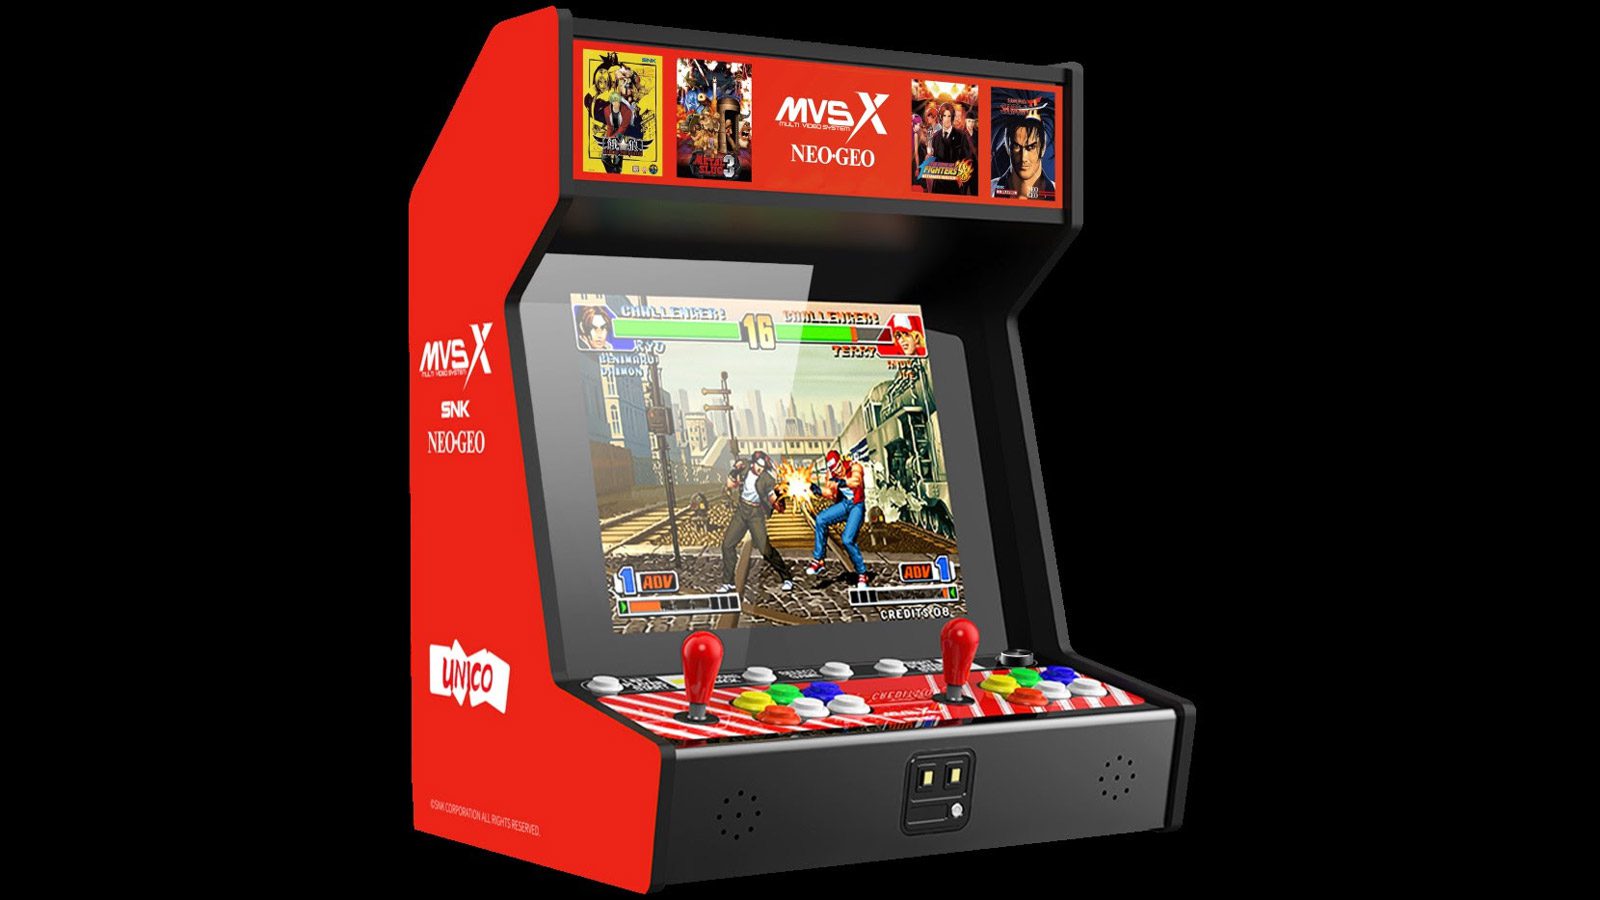 SNK NeoGeo MVSX Home Arcade